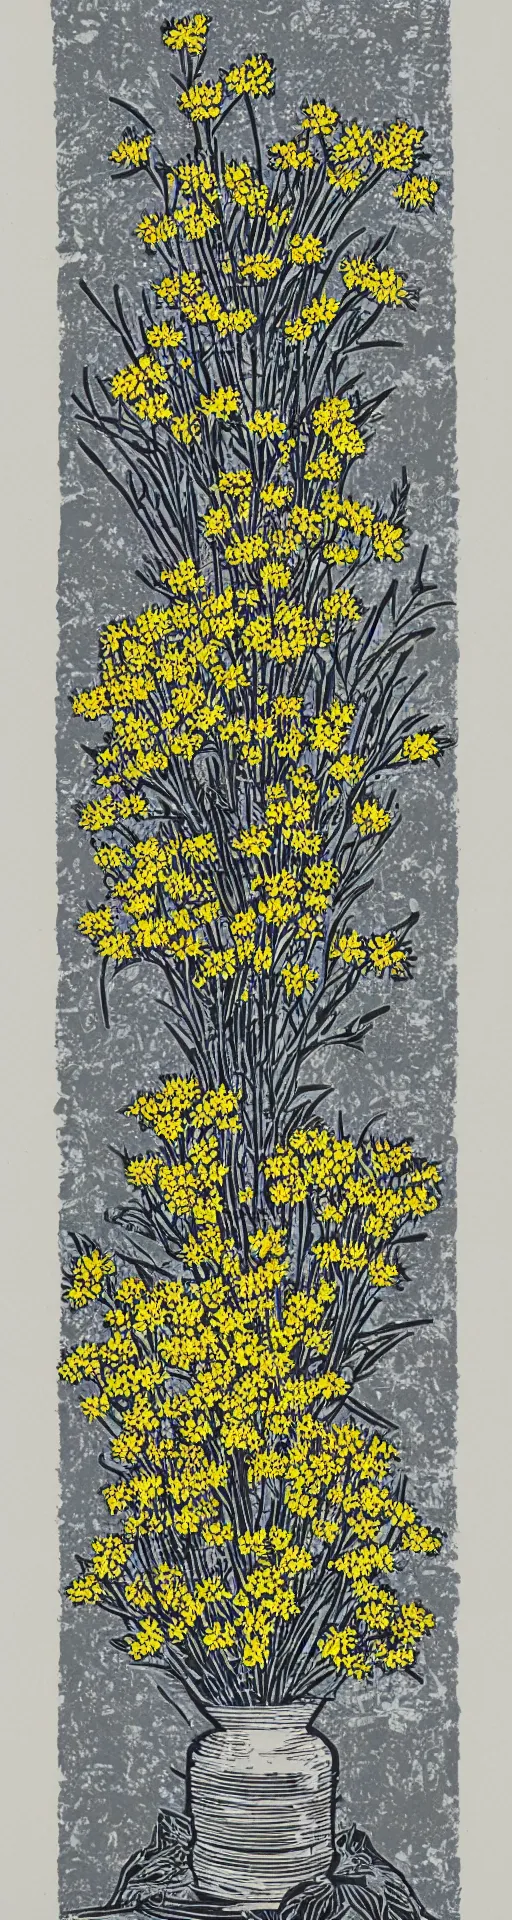 Prompt: a linocut of wattle flowers in a vase